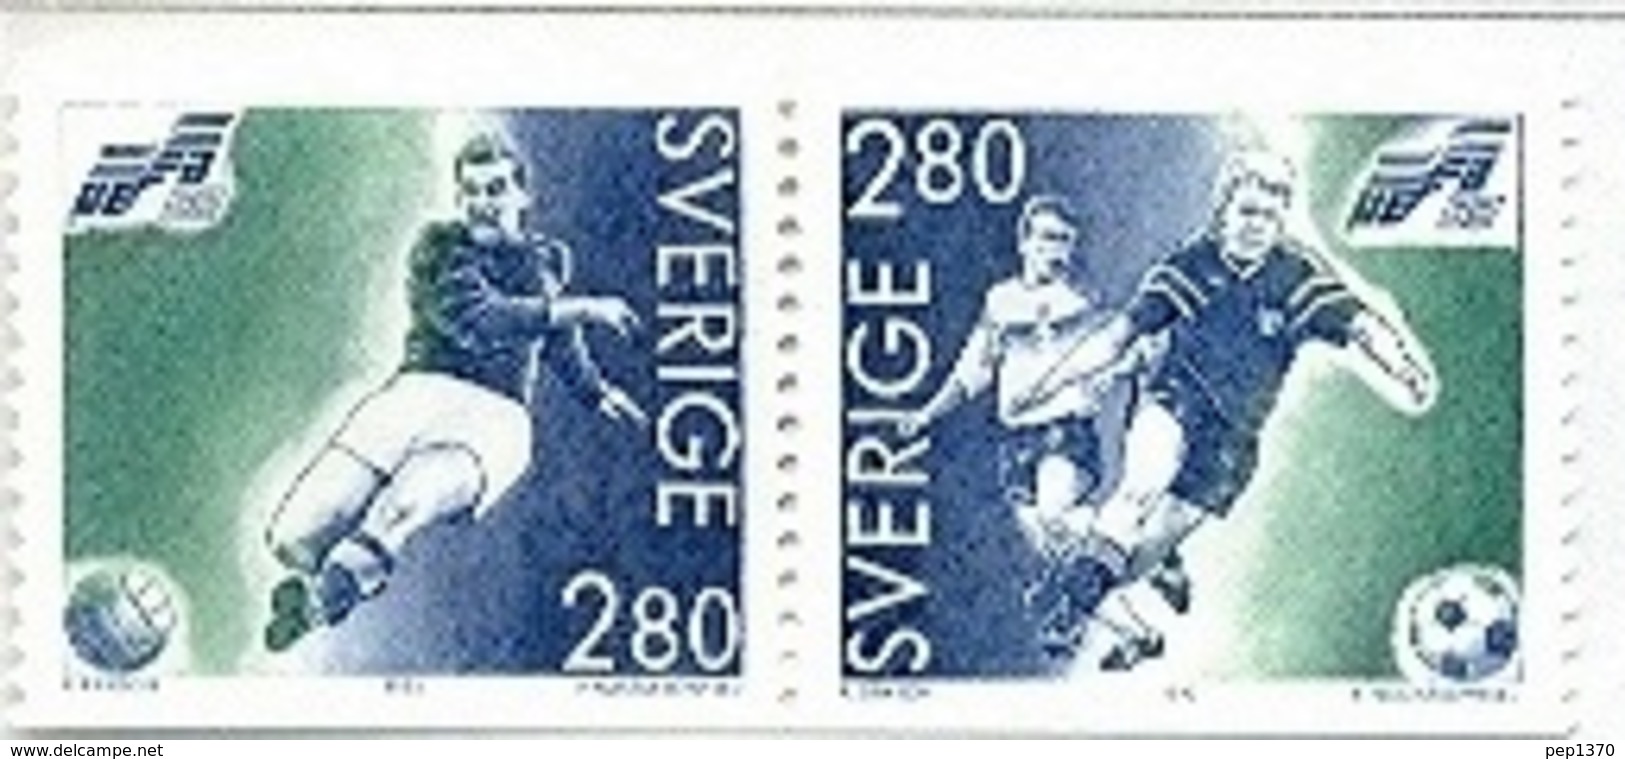 SUECIA1992 - CAMPEONATO DE EUROPA DE FUTBOL - YVERT 1697-1698 - Unused Stamps